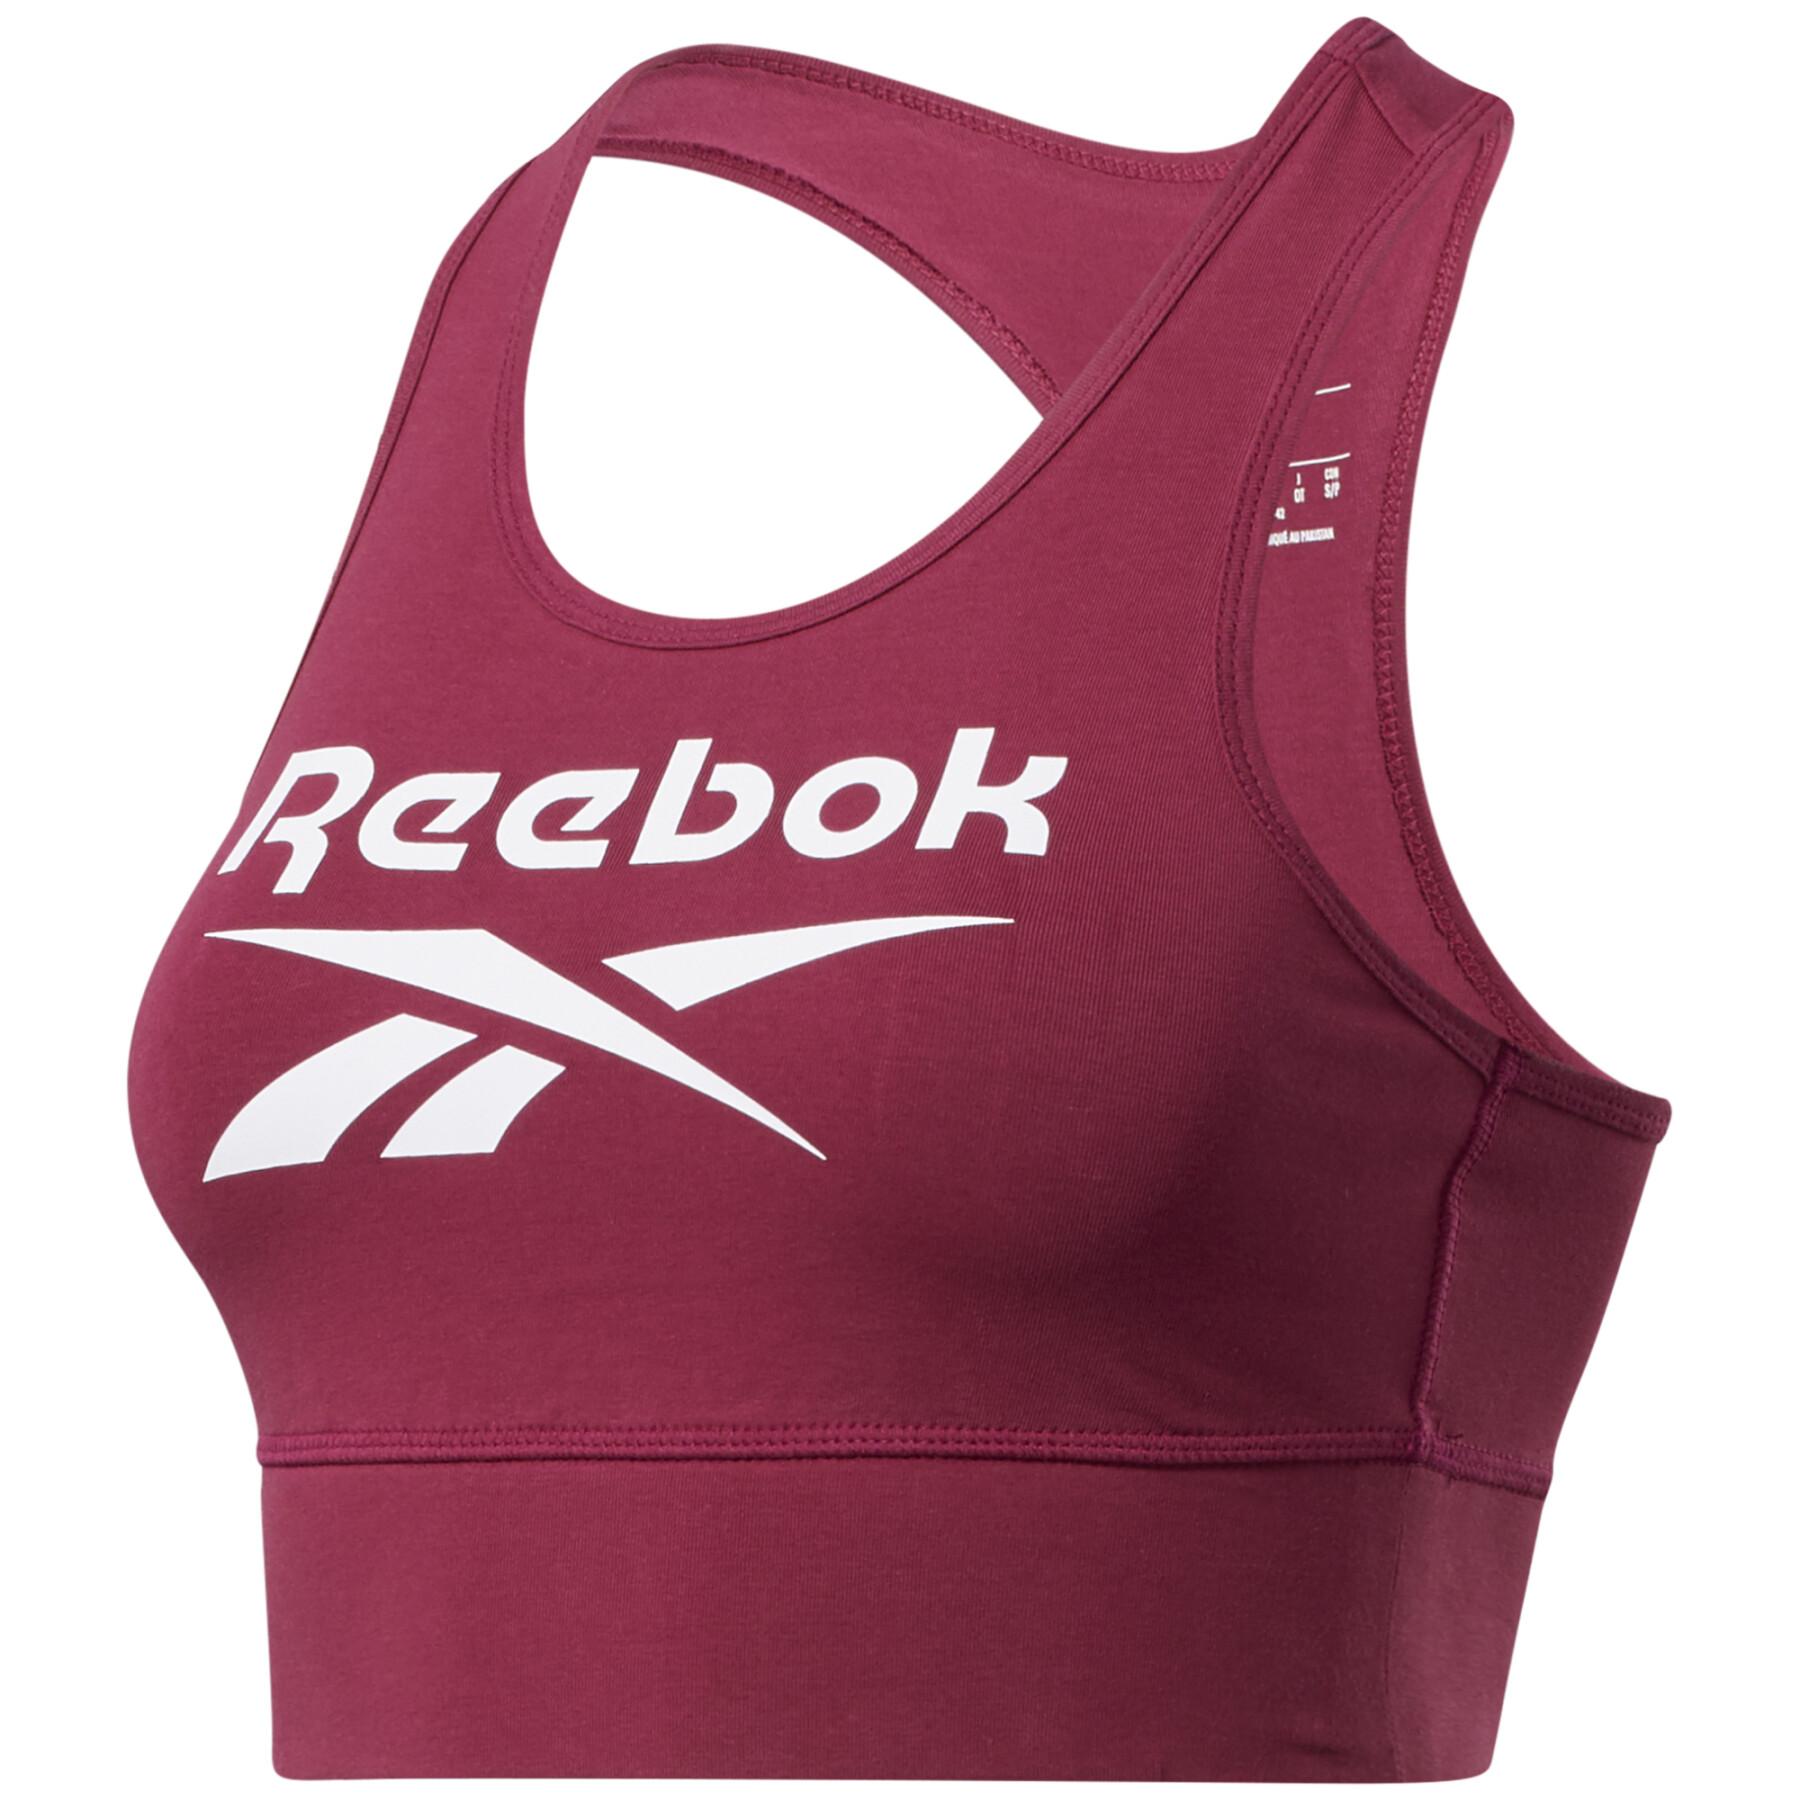 Women's bra Reebok Identity